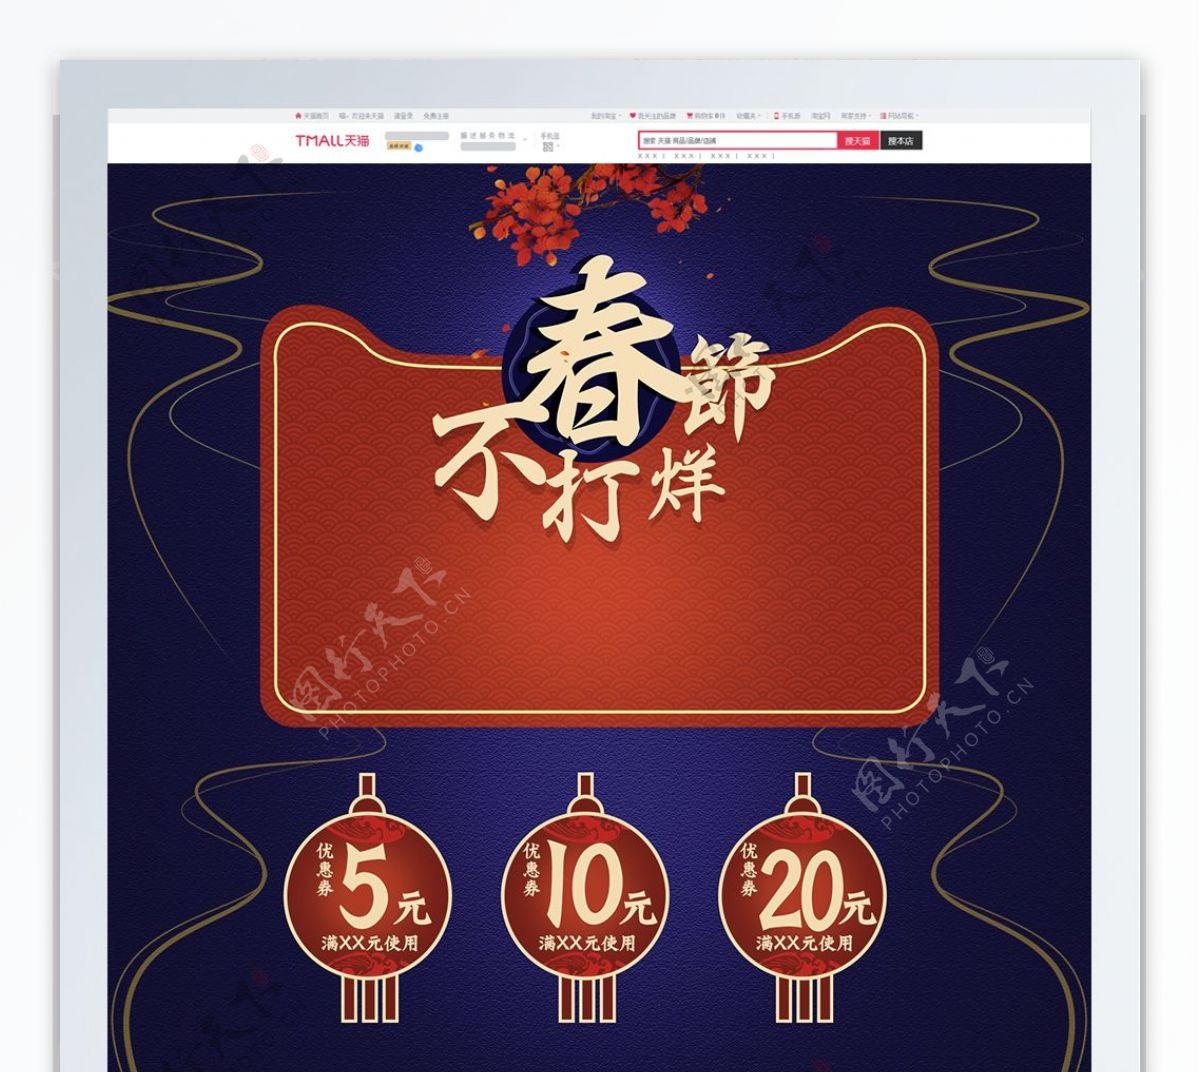 电商淘宝春节不打烊中国风首页模板